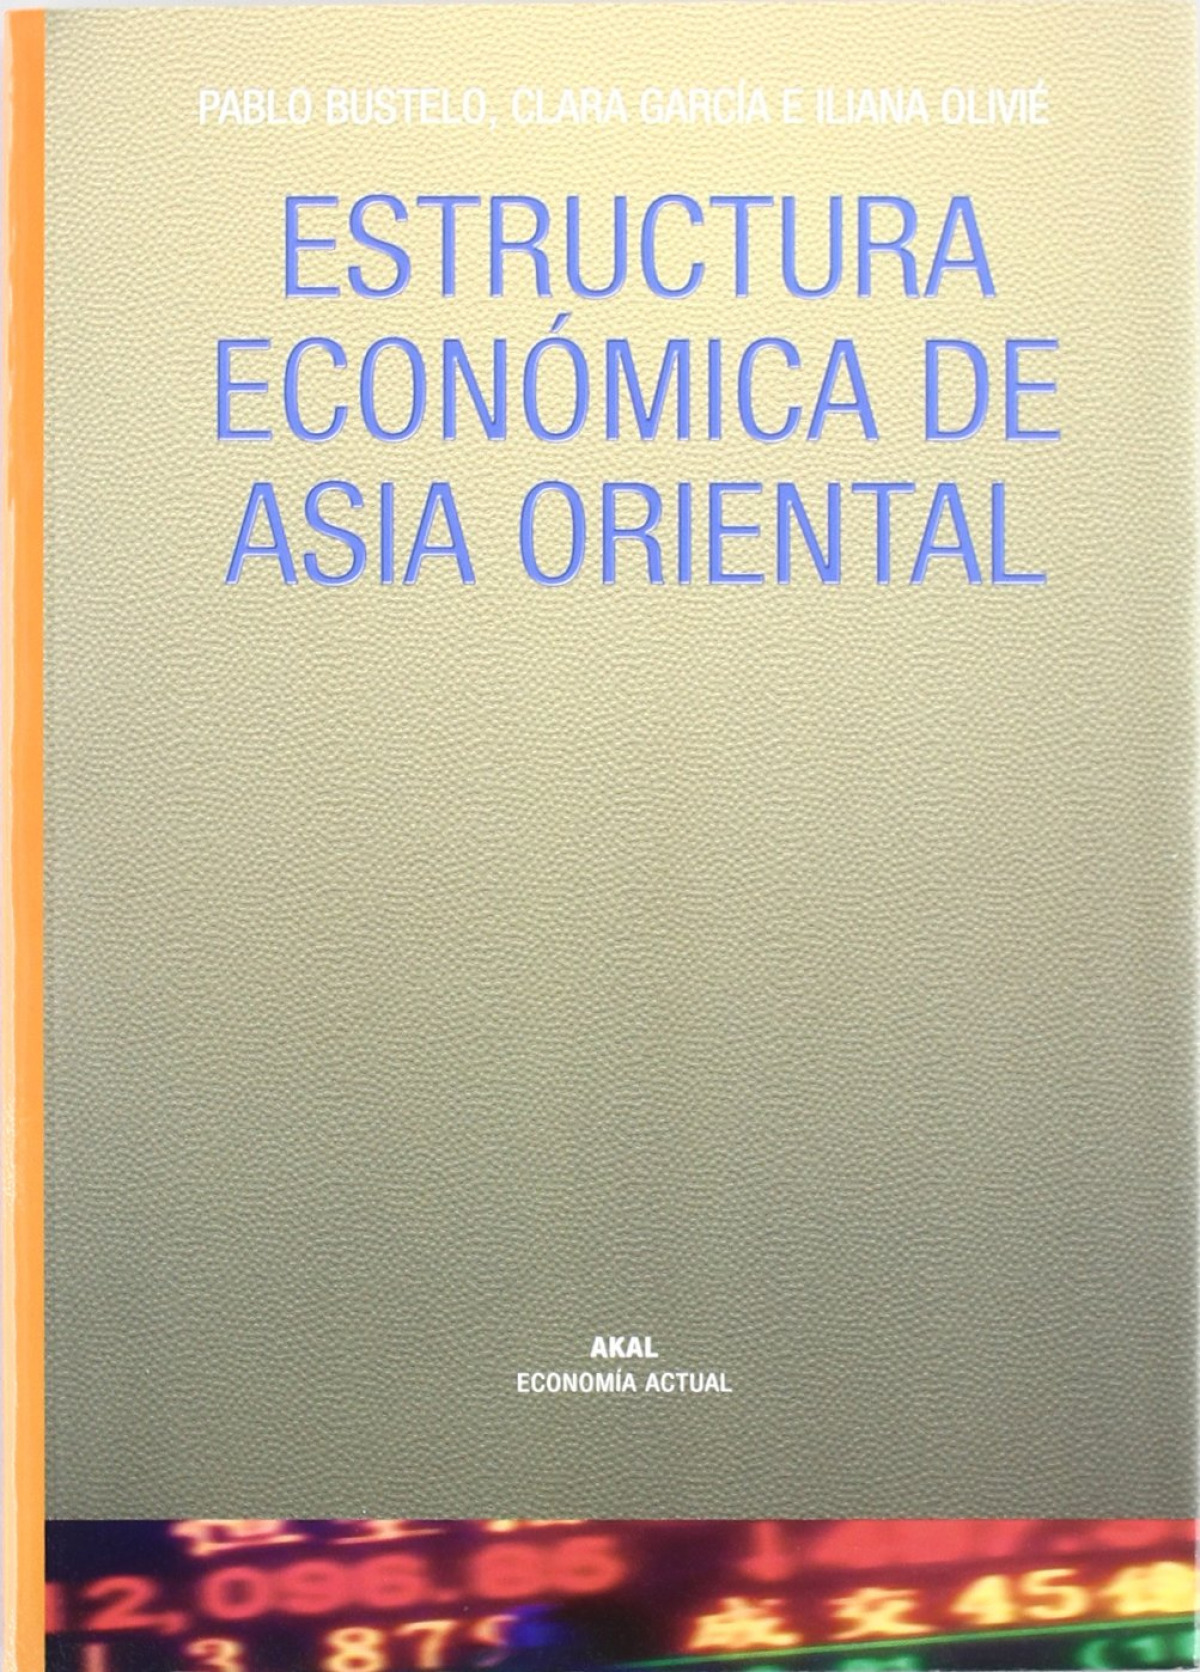 Estructura economica de asia oriental - Bustelo / Garcia / Olivie